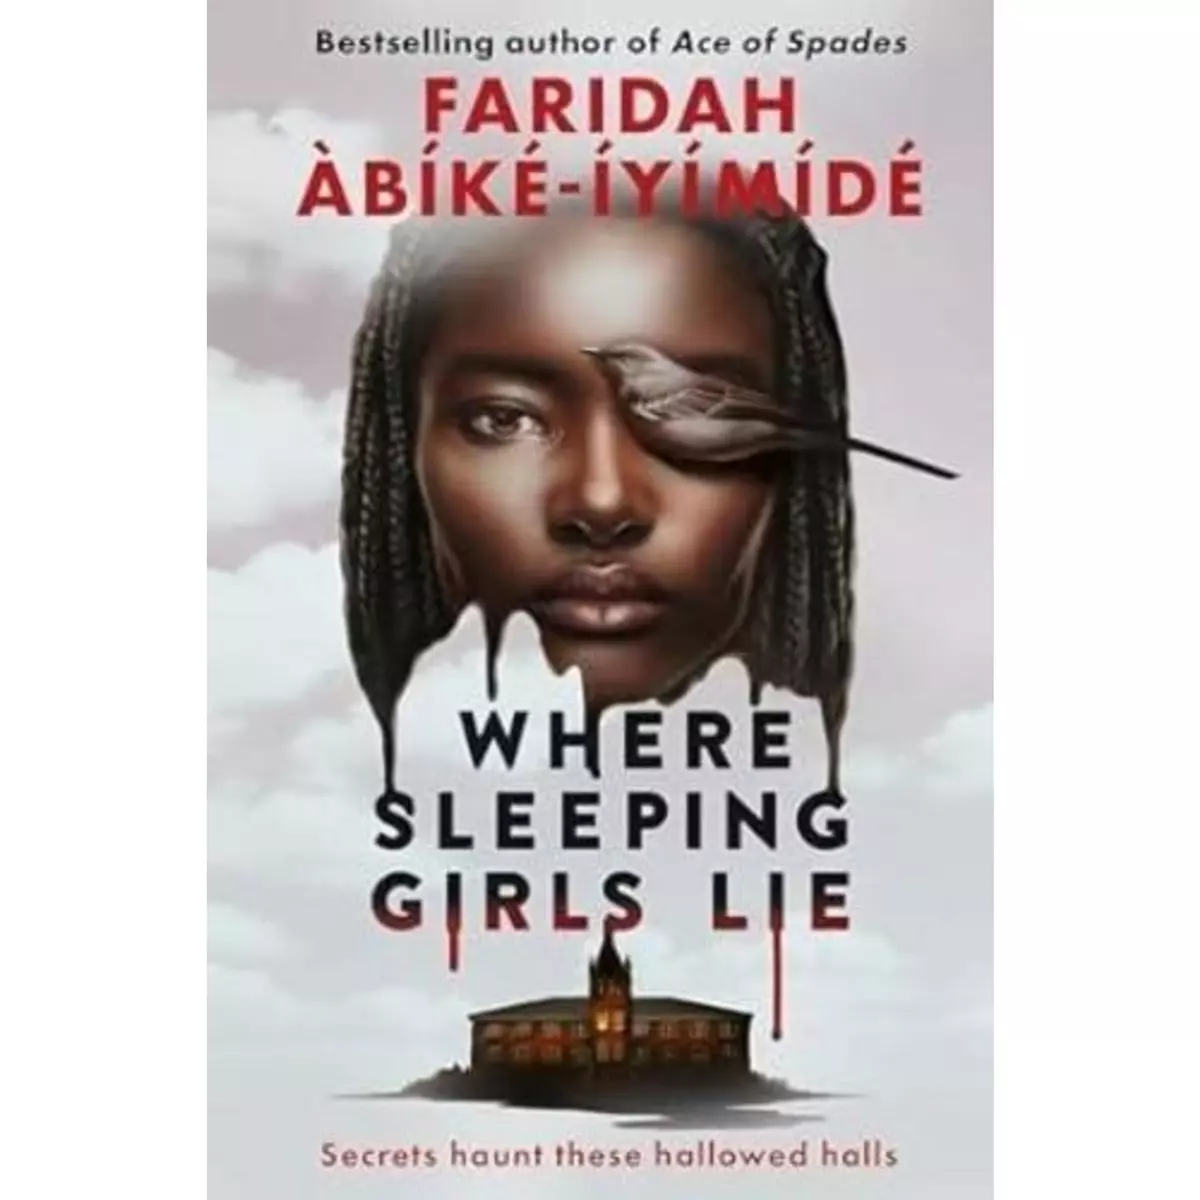  WHERE SLEEPING GIRLS LIE, Abiké-Iyimidé Faridah